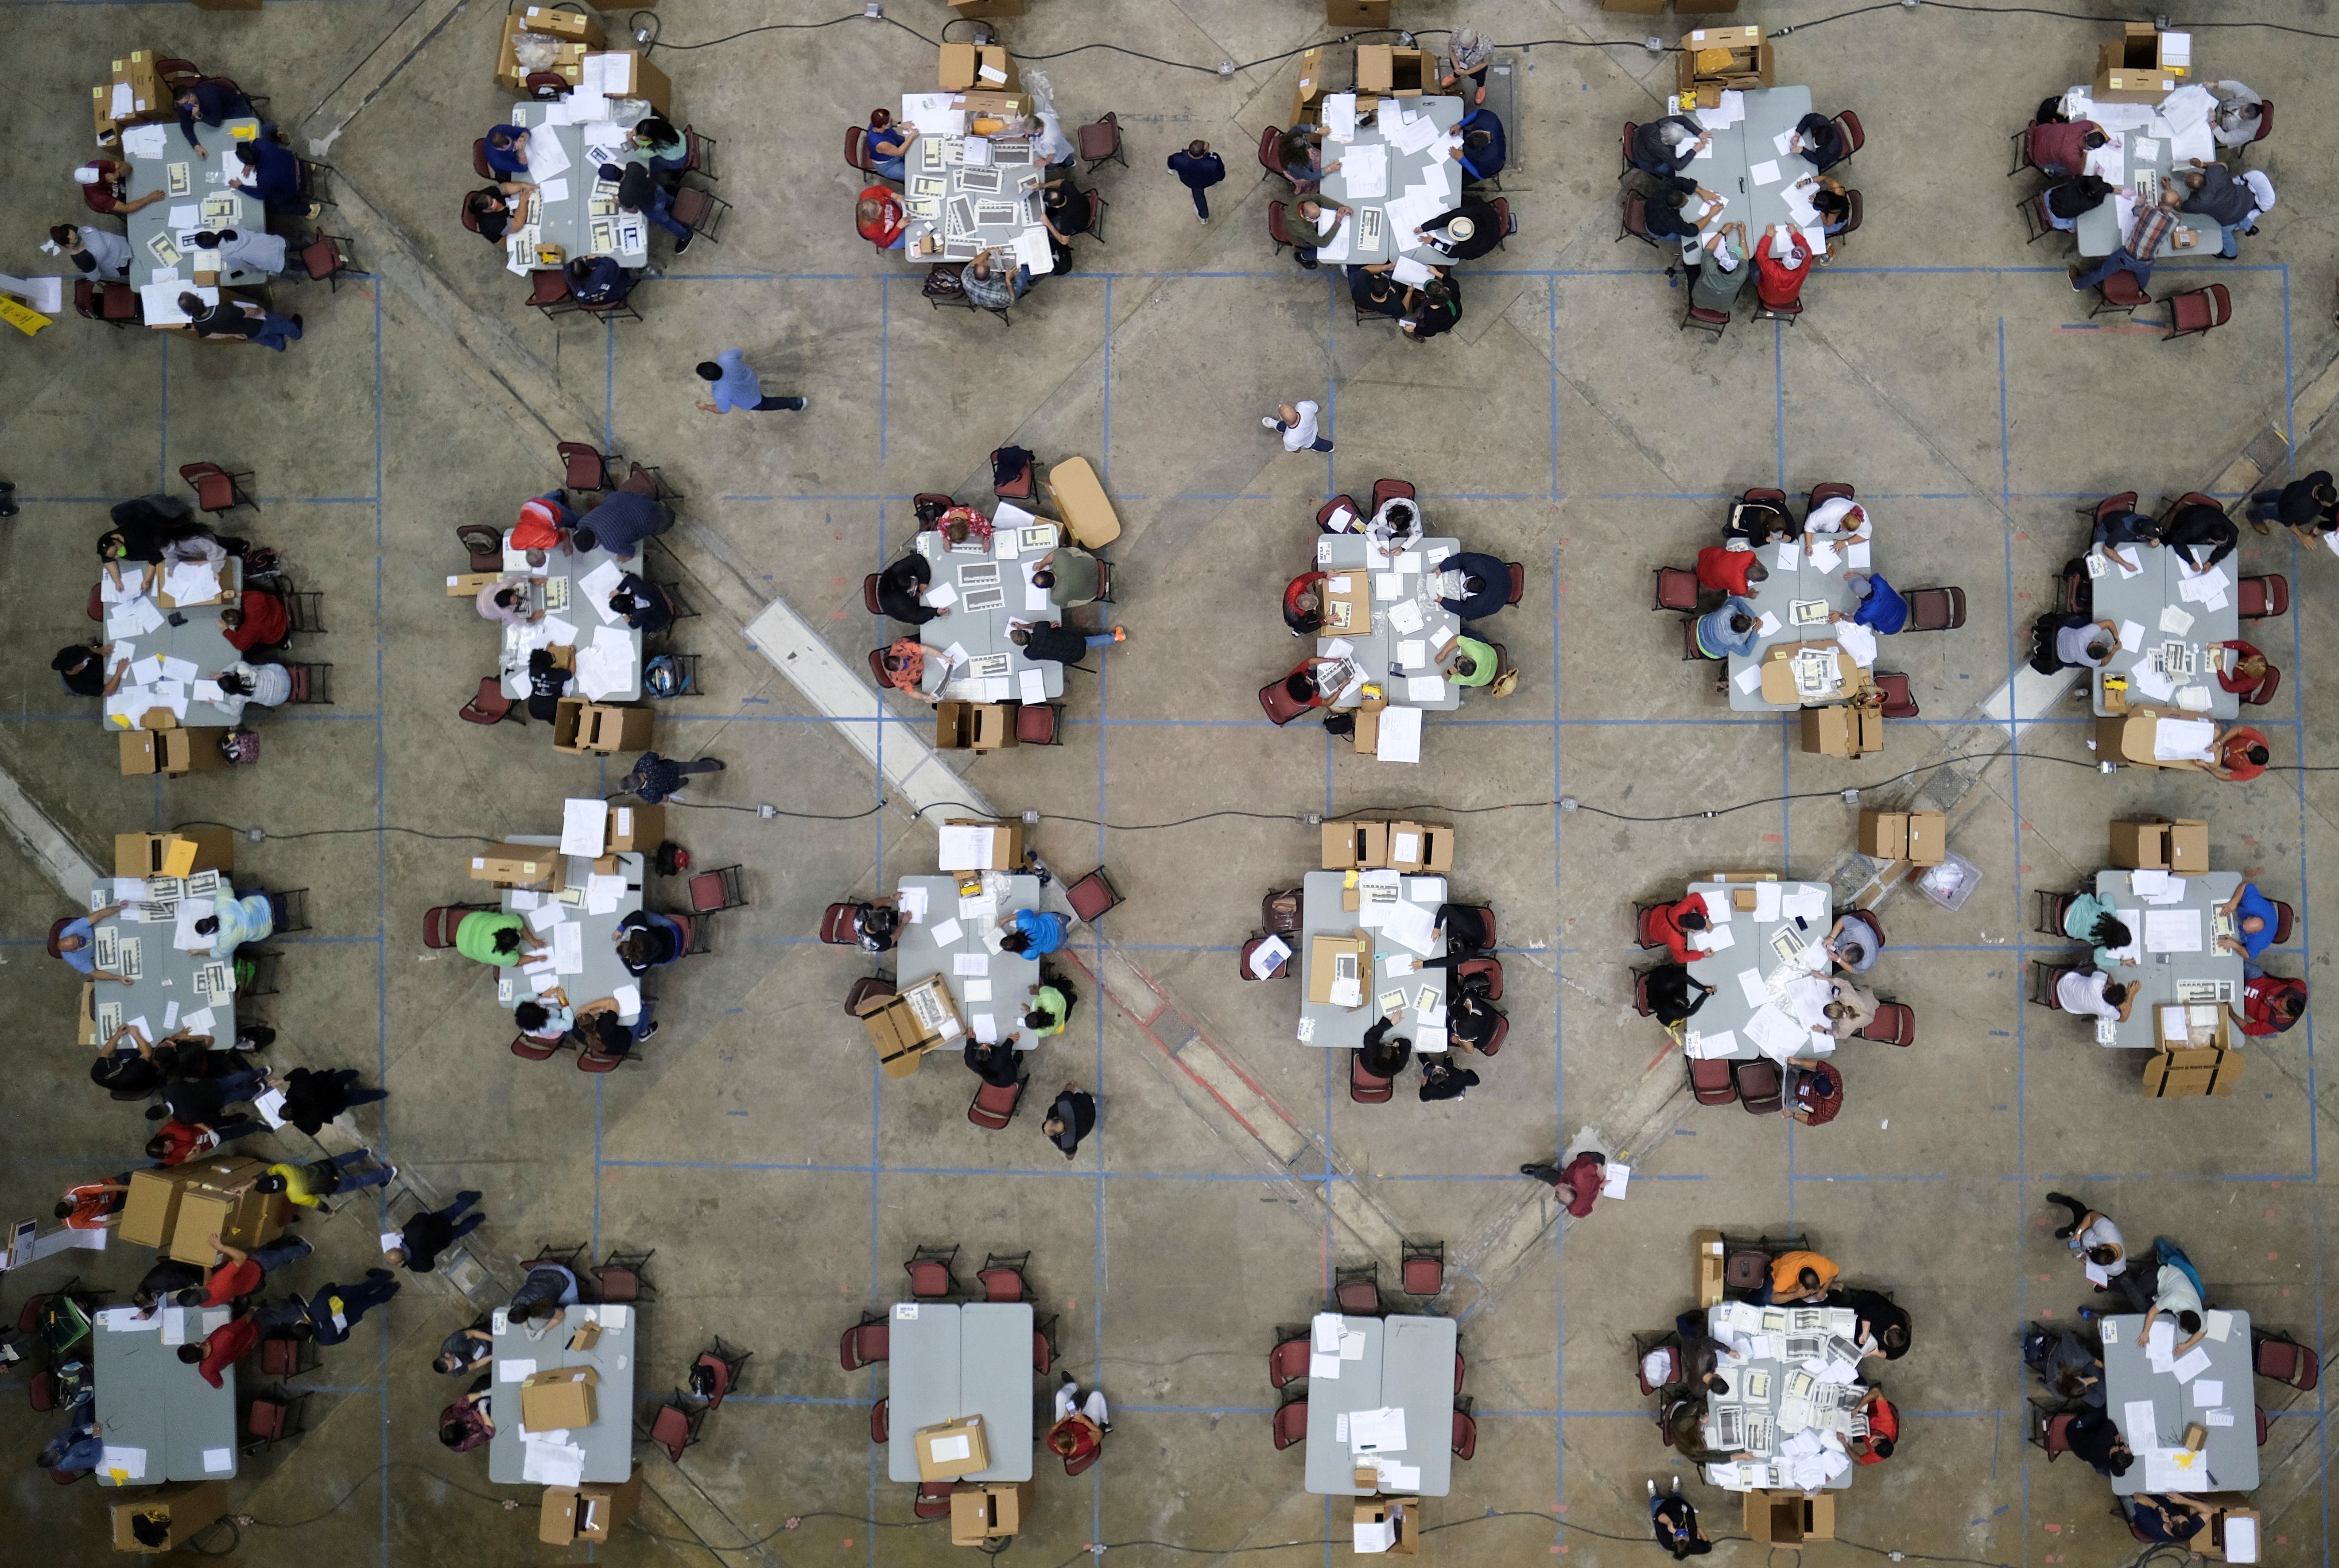 Trabajadores de la elección contando votos en el Coliseo Roberto Clemente en San Juan, Puerto Rico. REUTERS/Ricardo Arduengo TPX IMAGES OF THE DAY